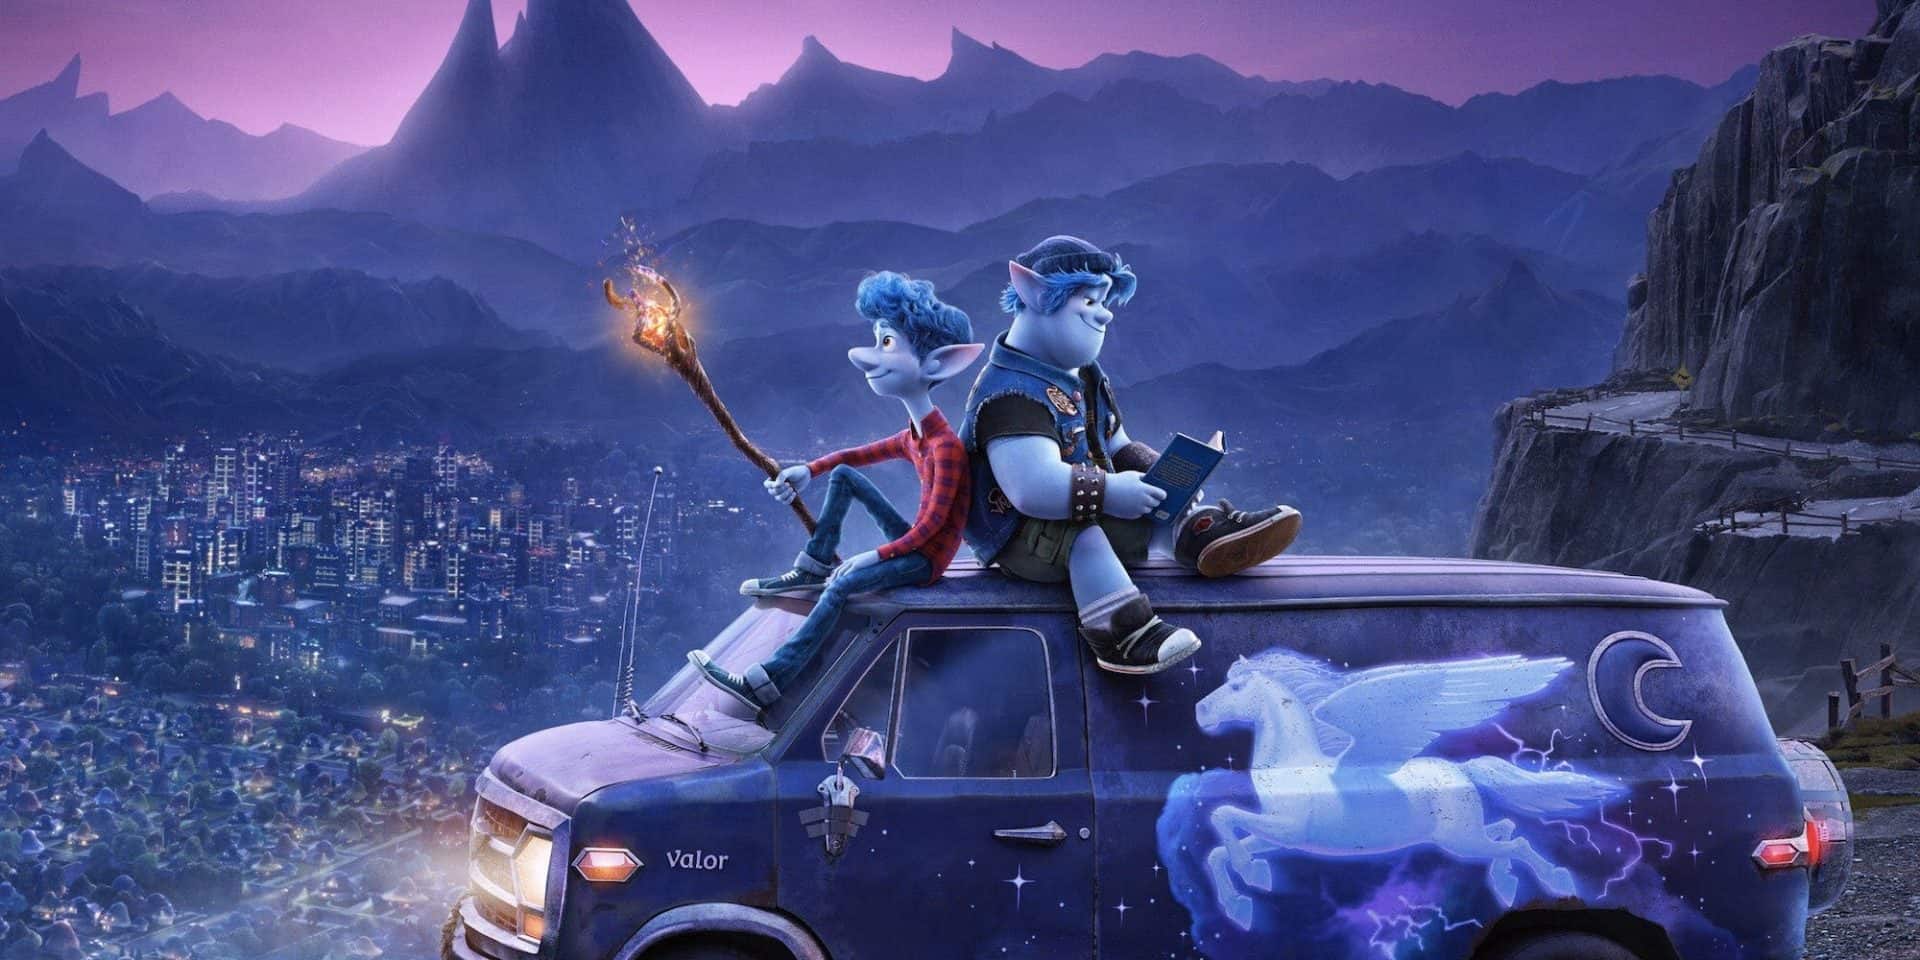 Onward – Oltre la magia: il nuovo trailer italiano del film Pixar